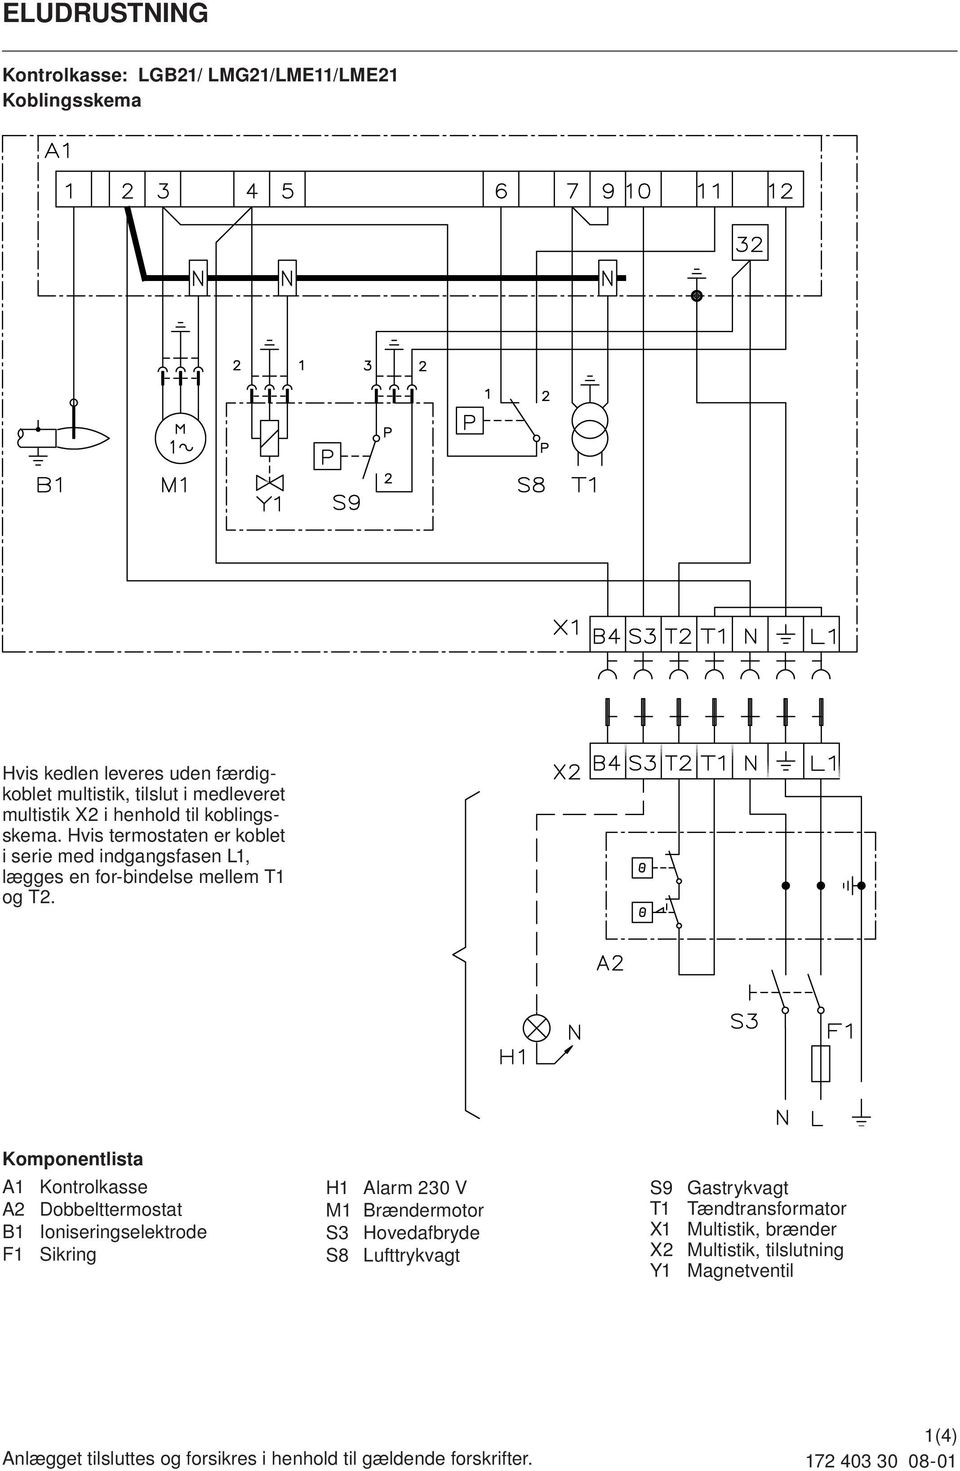 Komponentlista A1 Kontrolkasse A2 Dobbelttermostat B1 Ioniseringselektrode F1 Sikring H1 Alarm 230 V M1 Brændermotor S3 Hovedafbryde S8 Lufttrykvagt S9